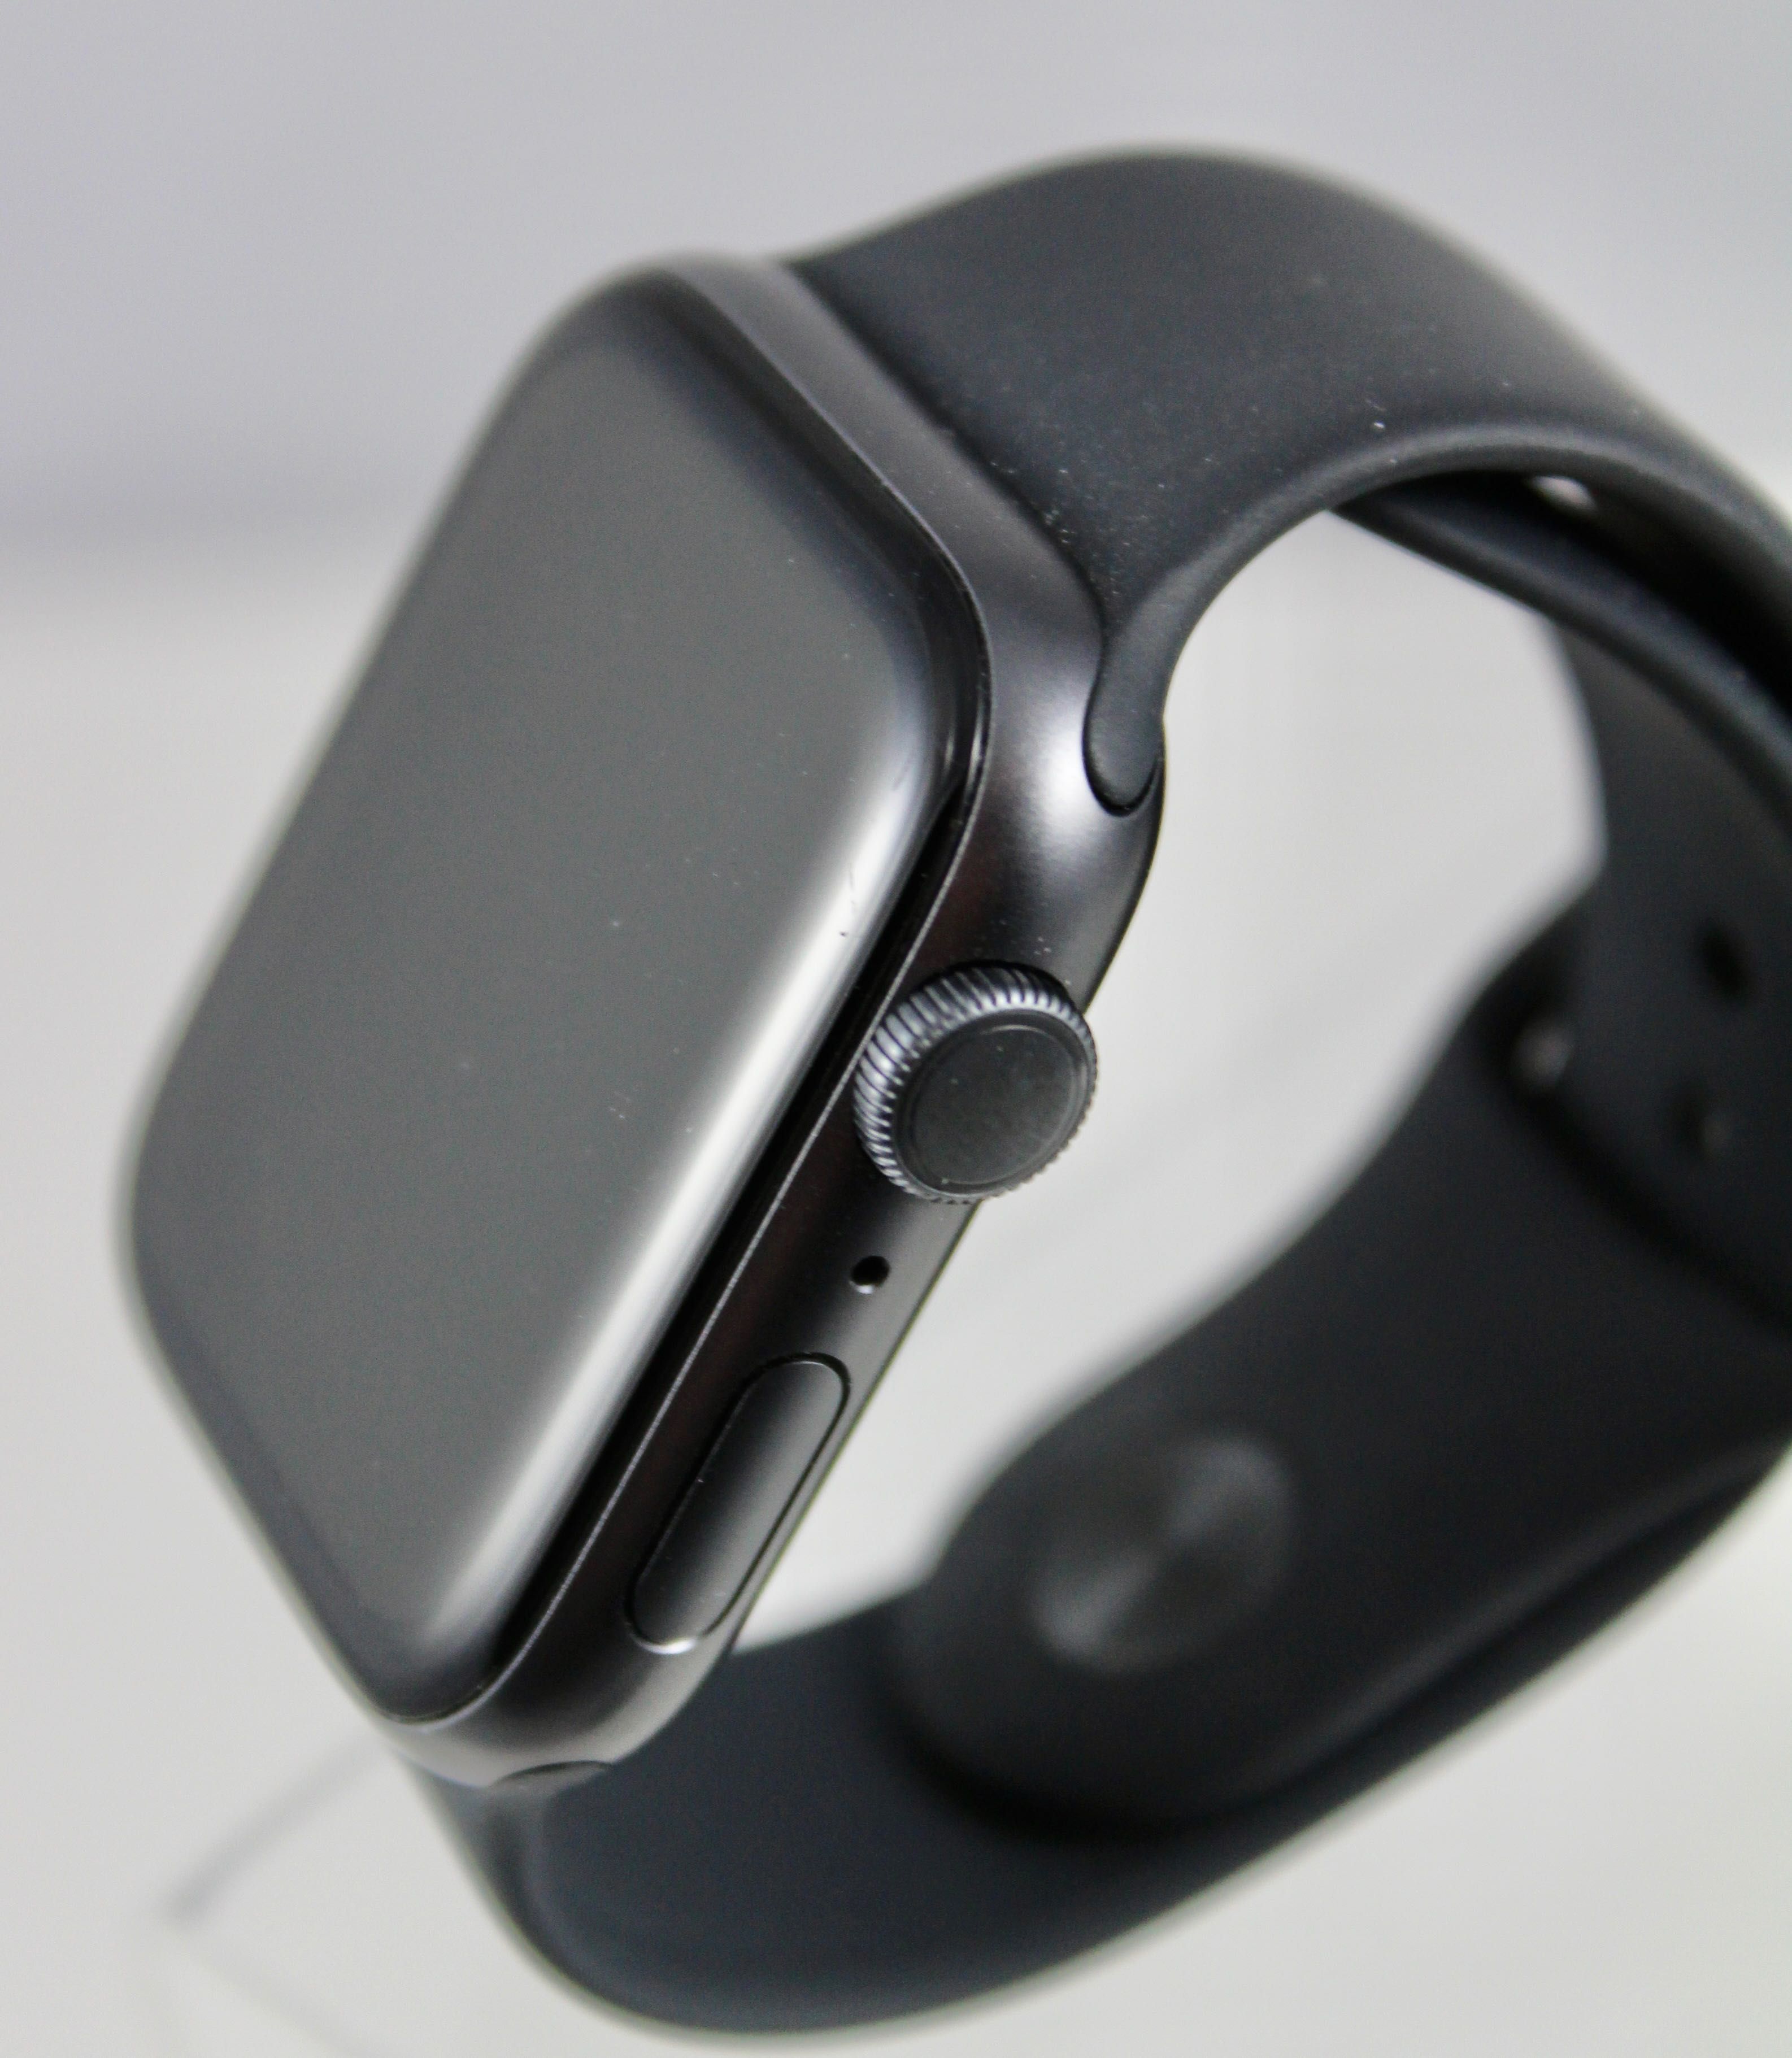 iGadżet | Apple Watch Series 5 44mm bateria 96% 2 paski smartwatch